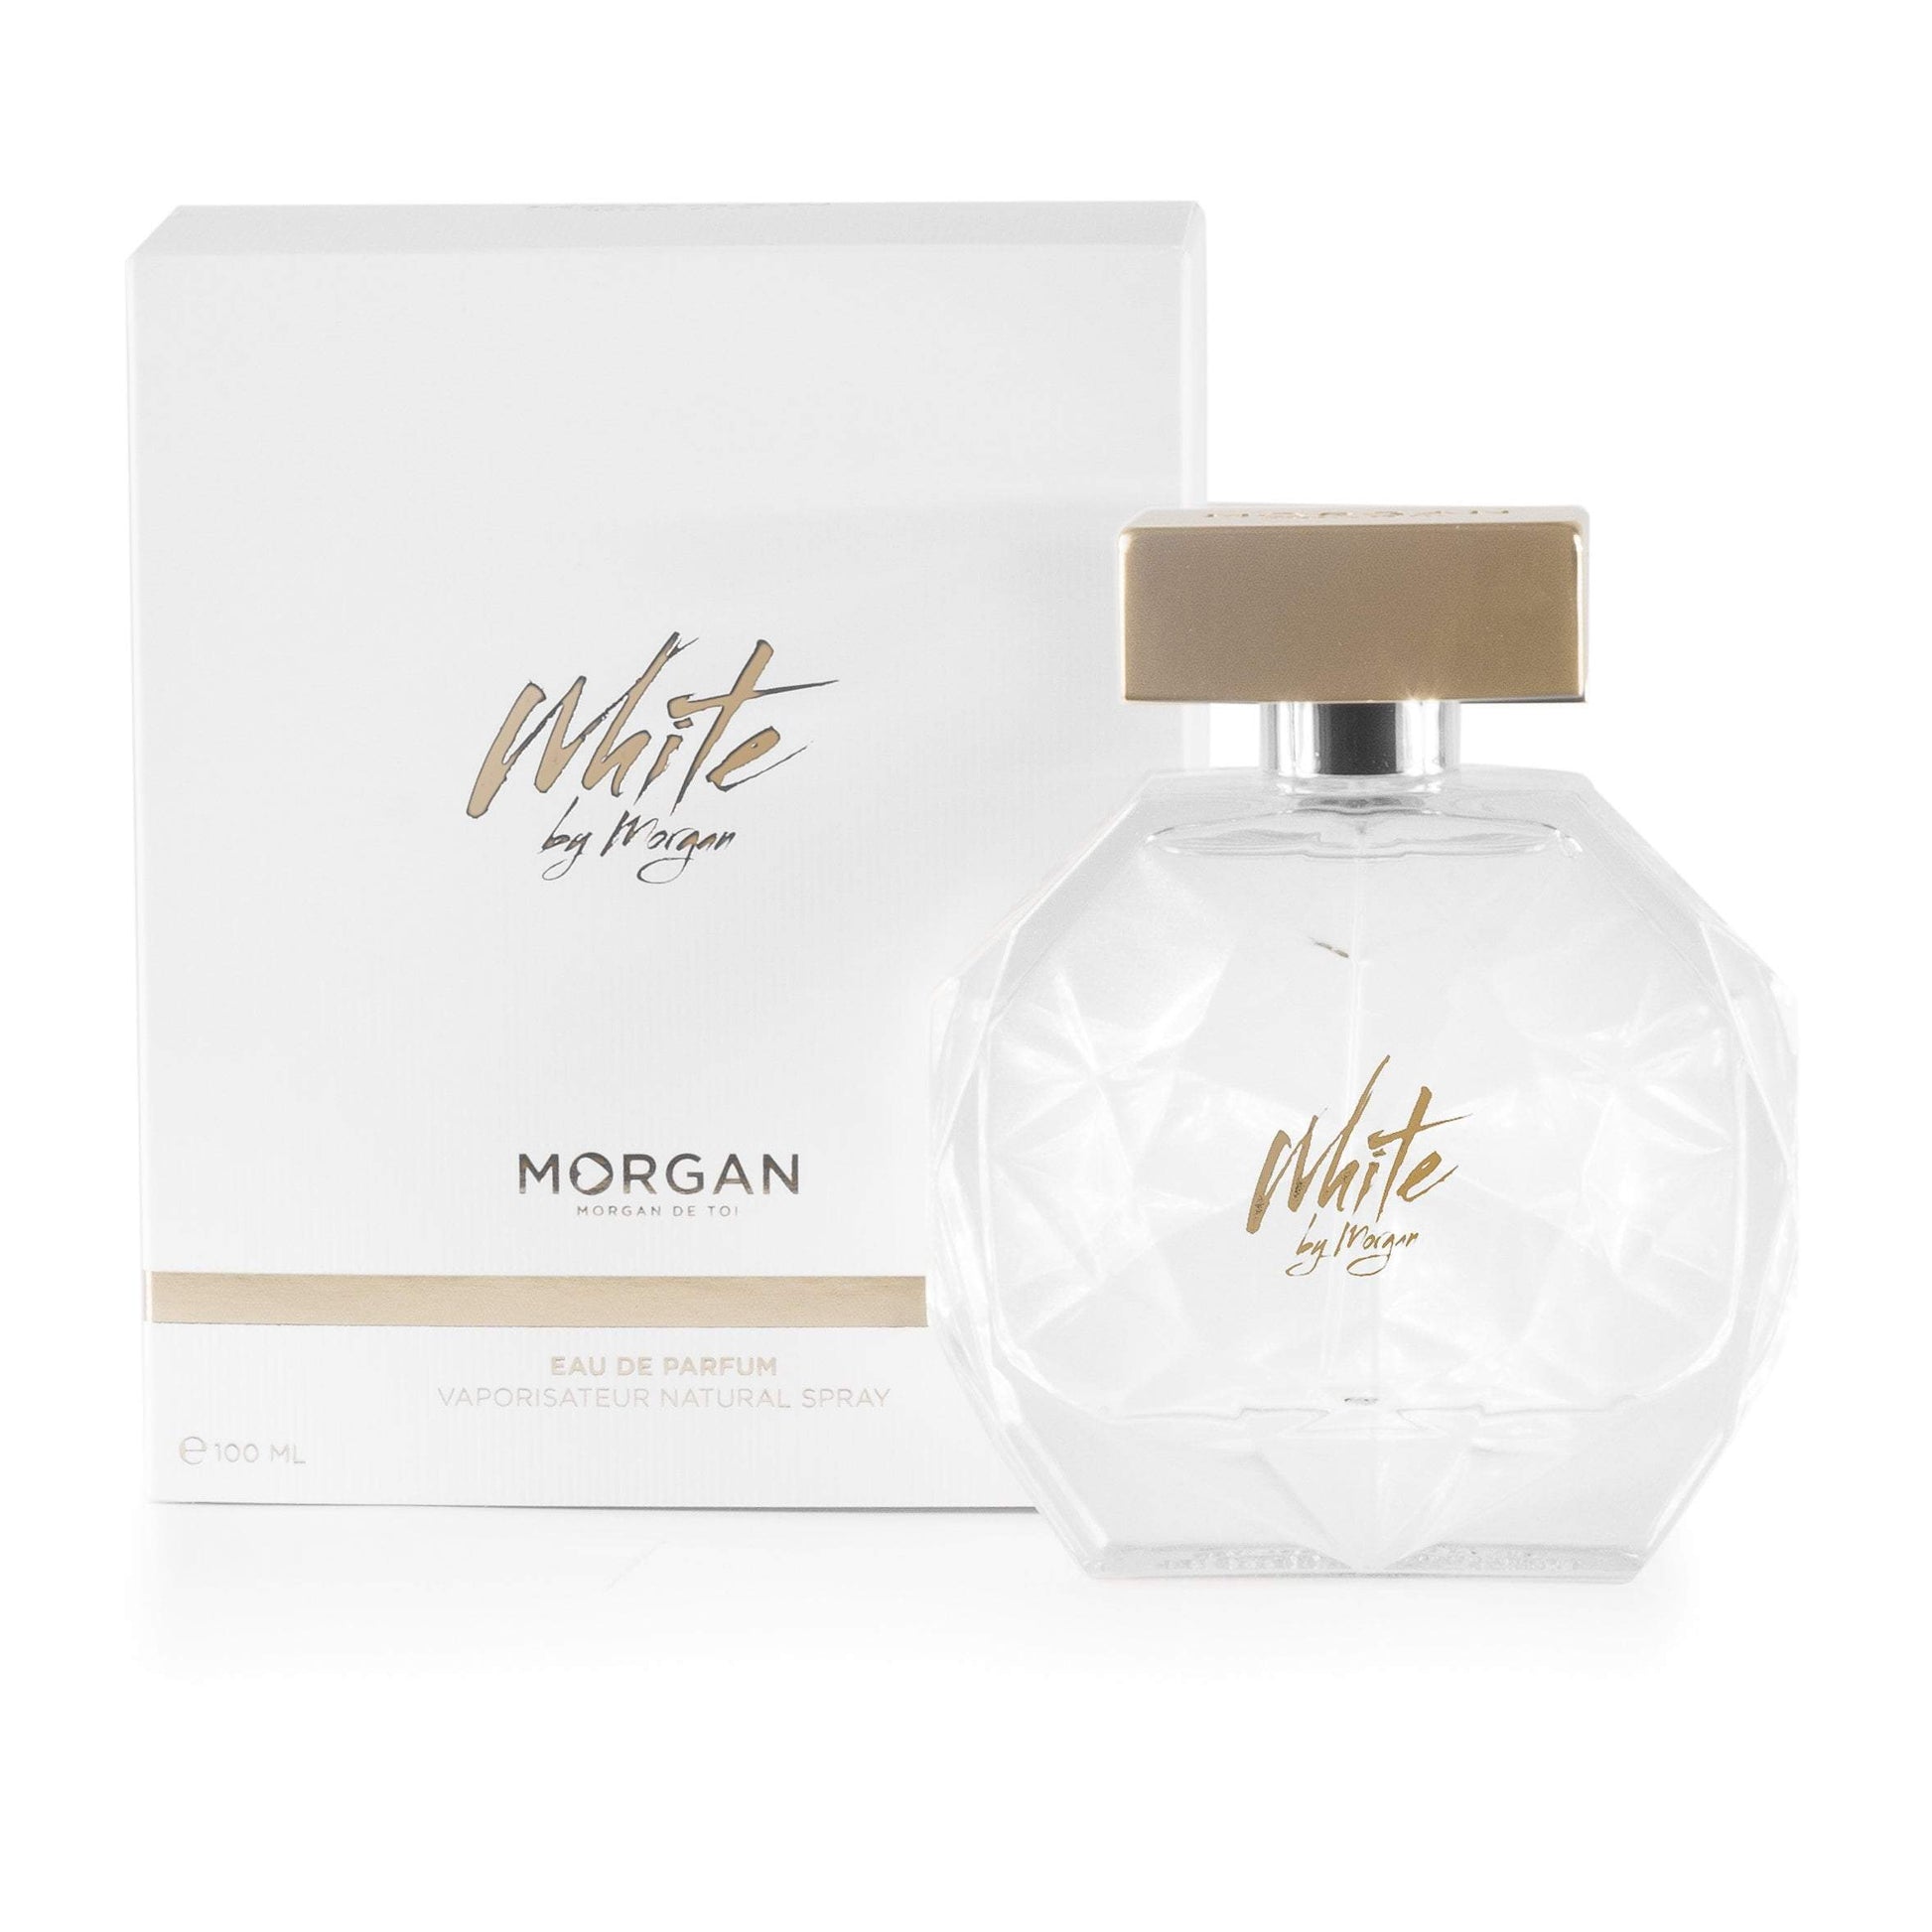 White by Morgan Eau de Parfum Spray for Women 3.3 oz. Click to open in modal